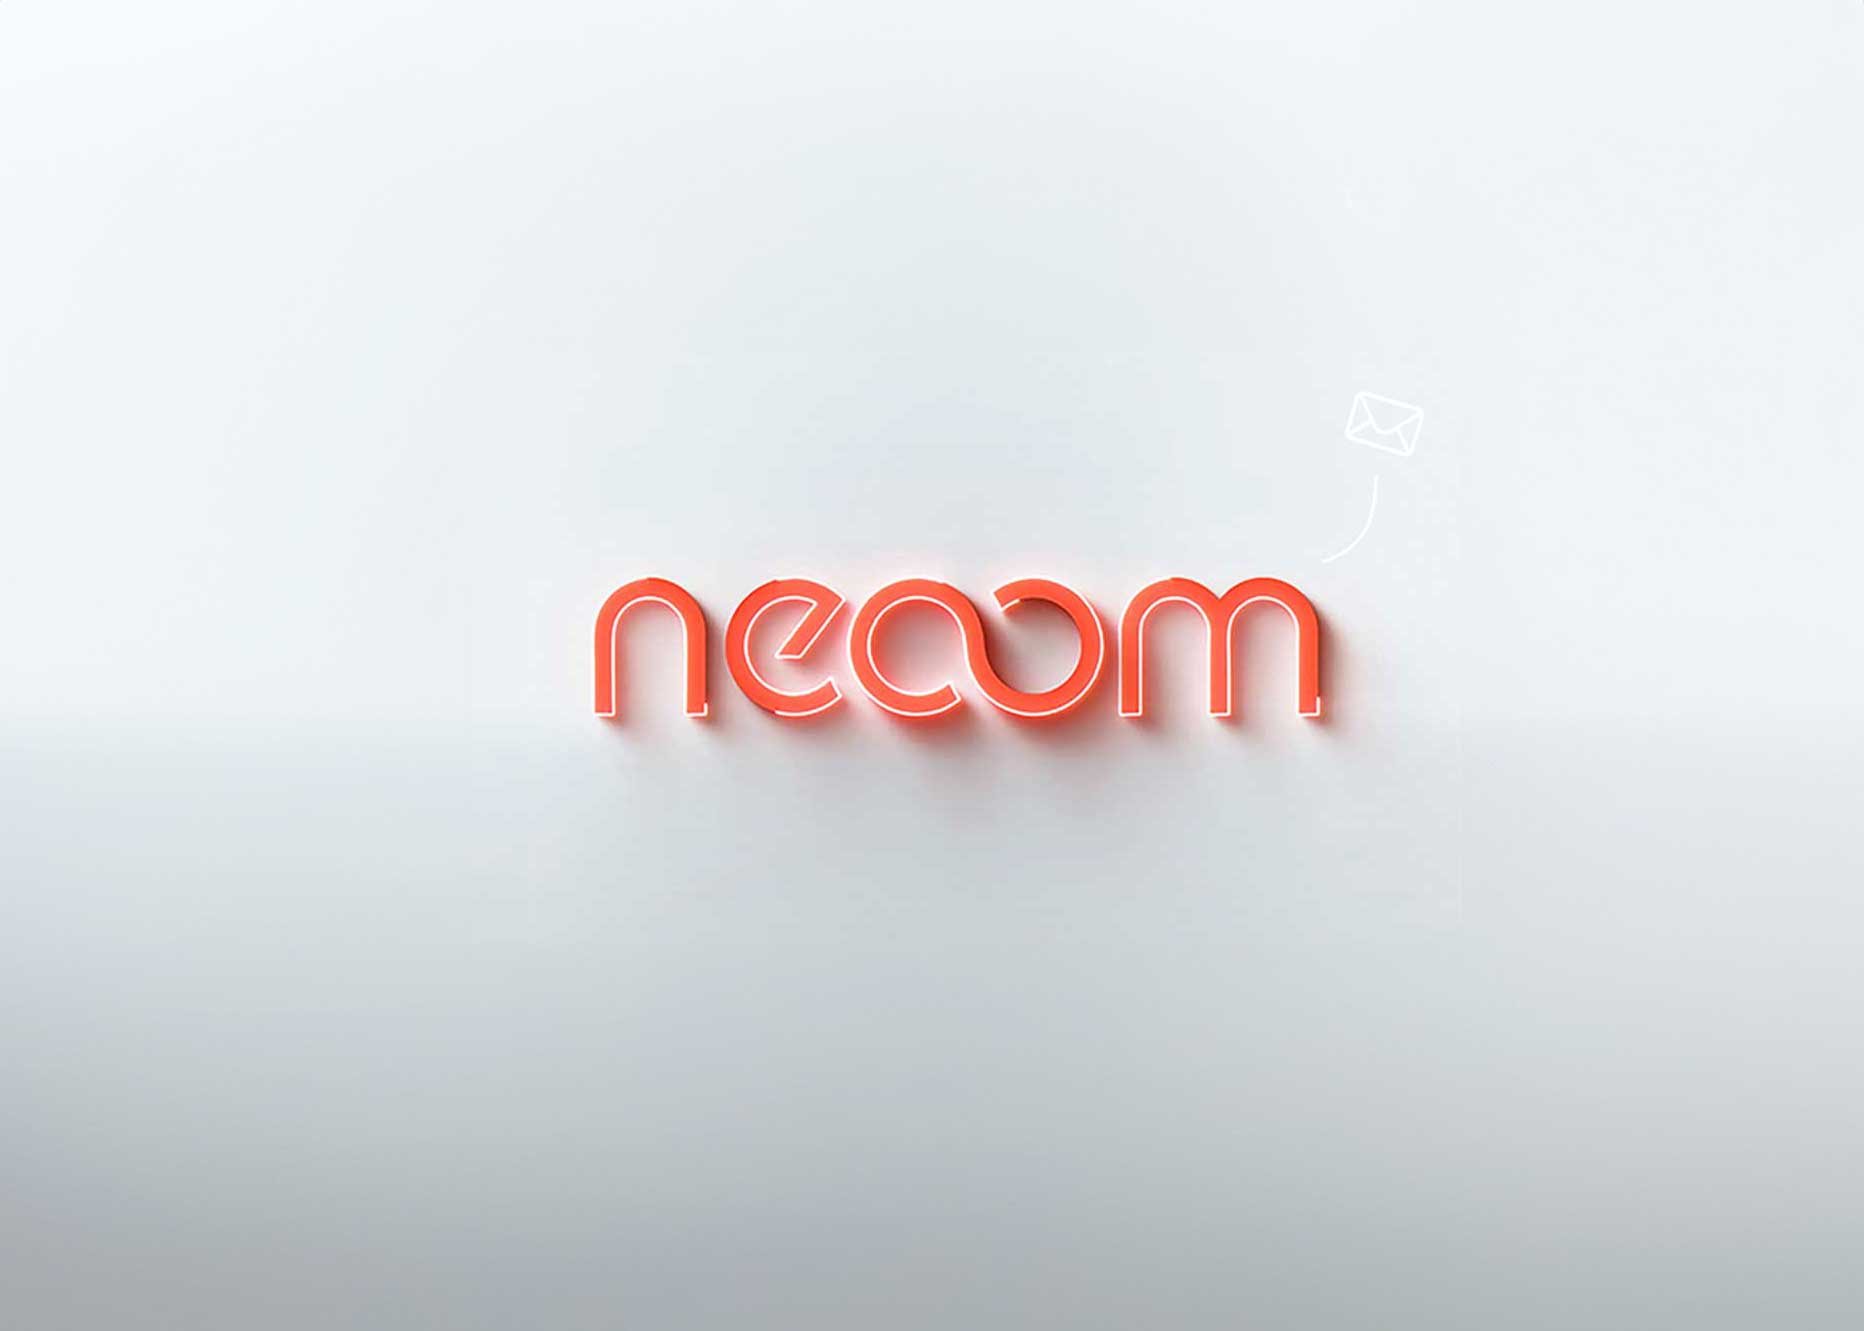 neoom_letter_large